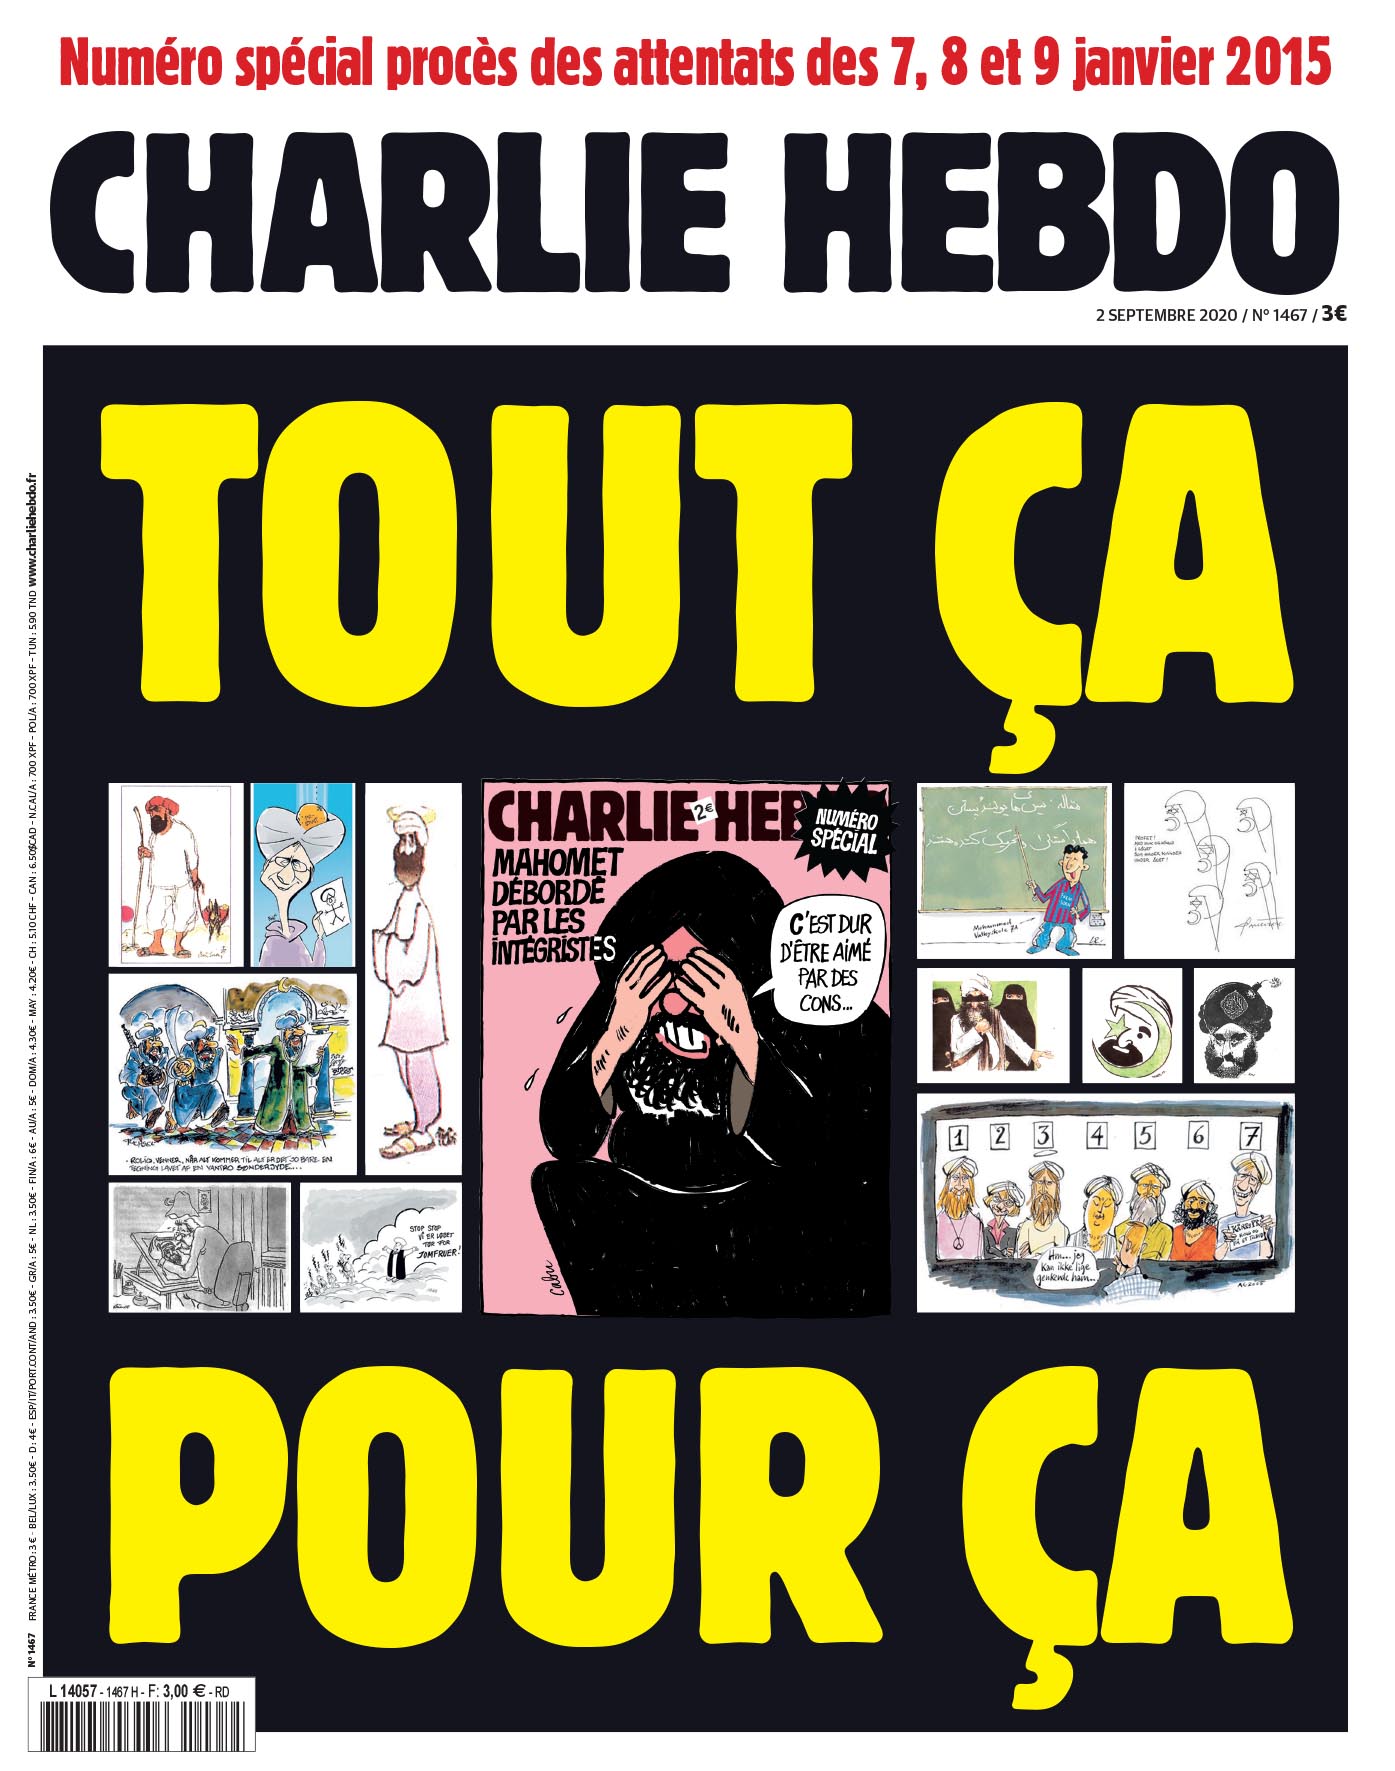 Charlie Hebdo vuelve a publicar caricaturas de Mahoma a cinco años del atentado terrorista